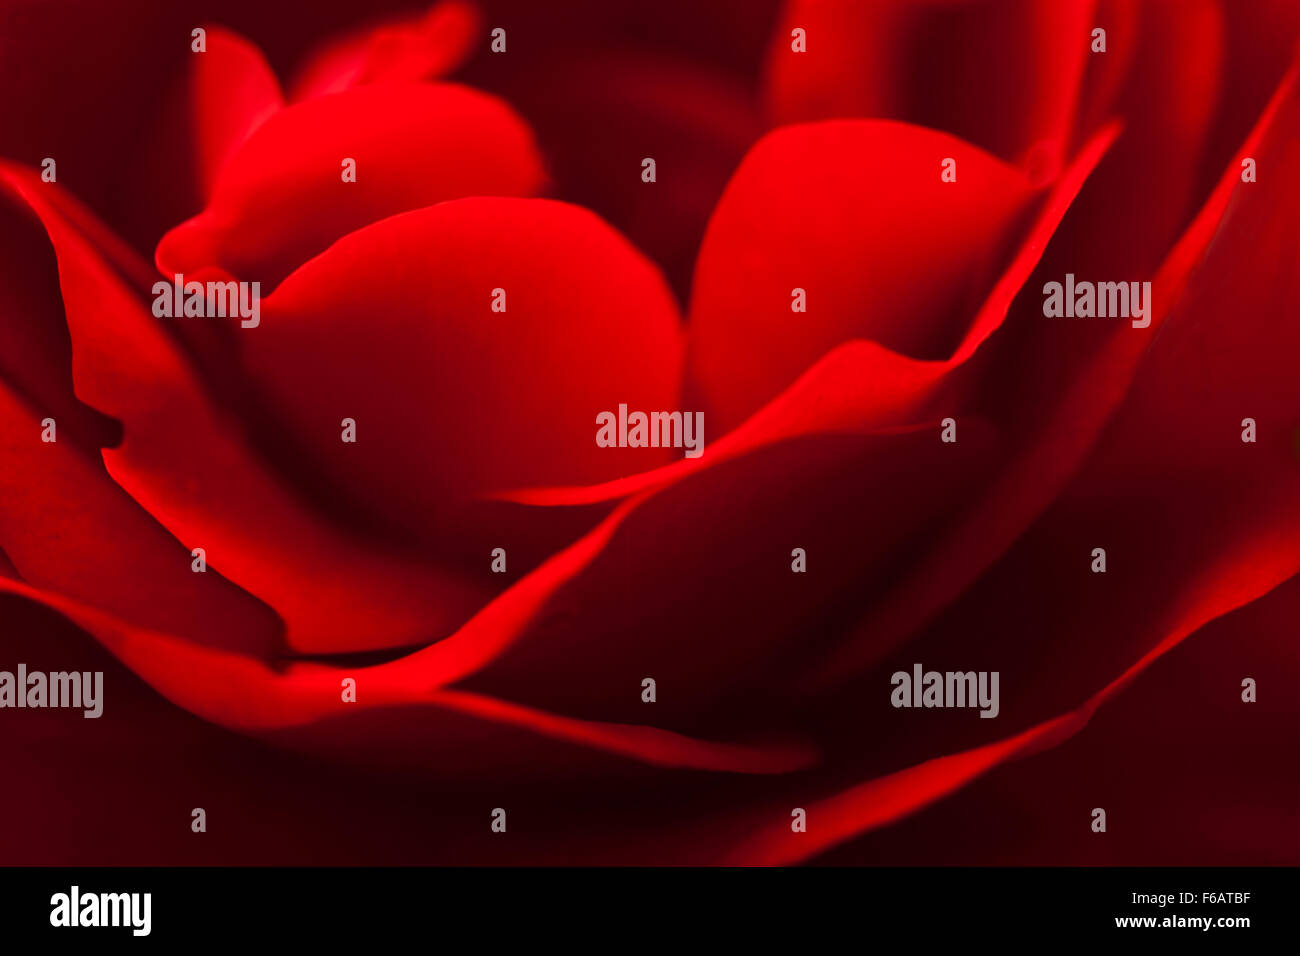 Close-up Crimson Red Rose in soft focus Stock Photo